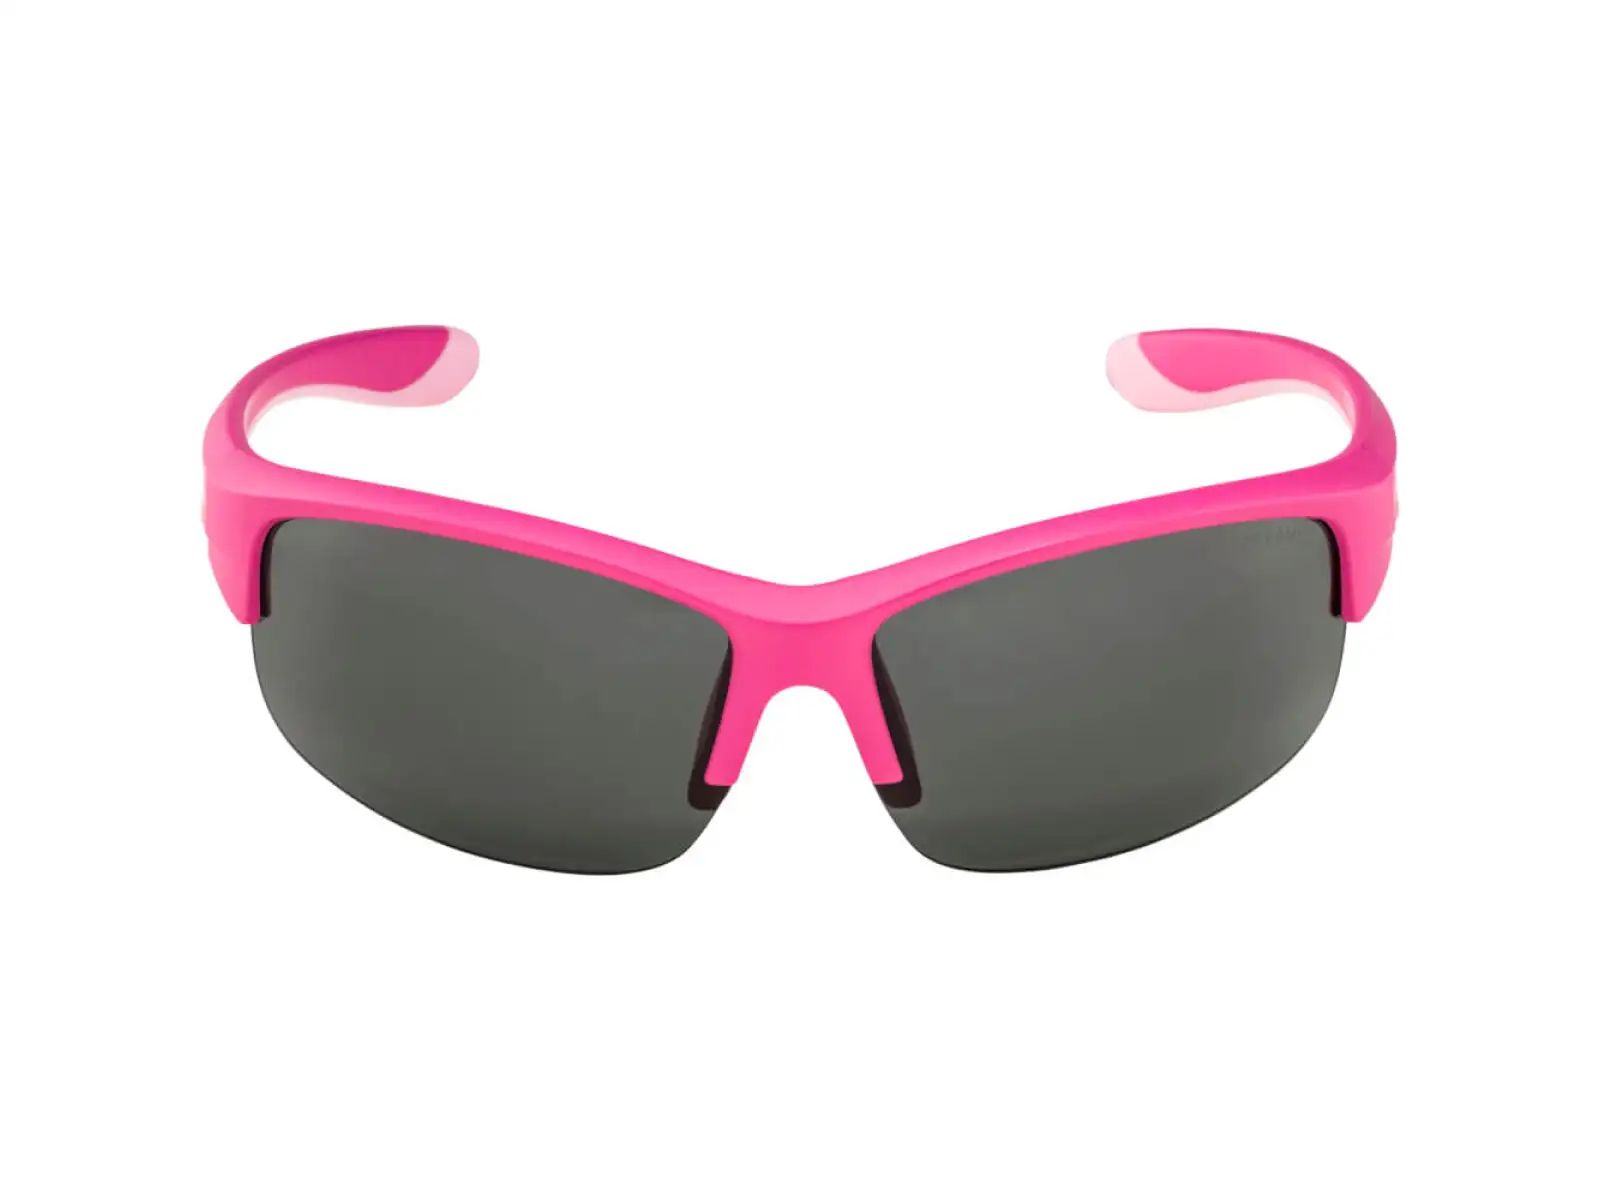 Alpina Flexxy Youth HR dětské brýle Pink Matt/Black